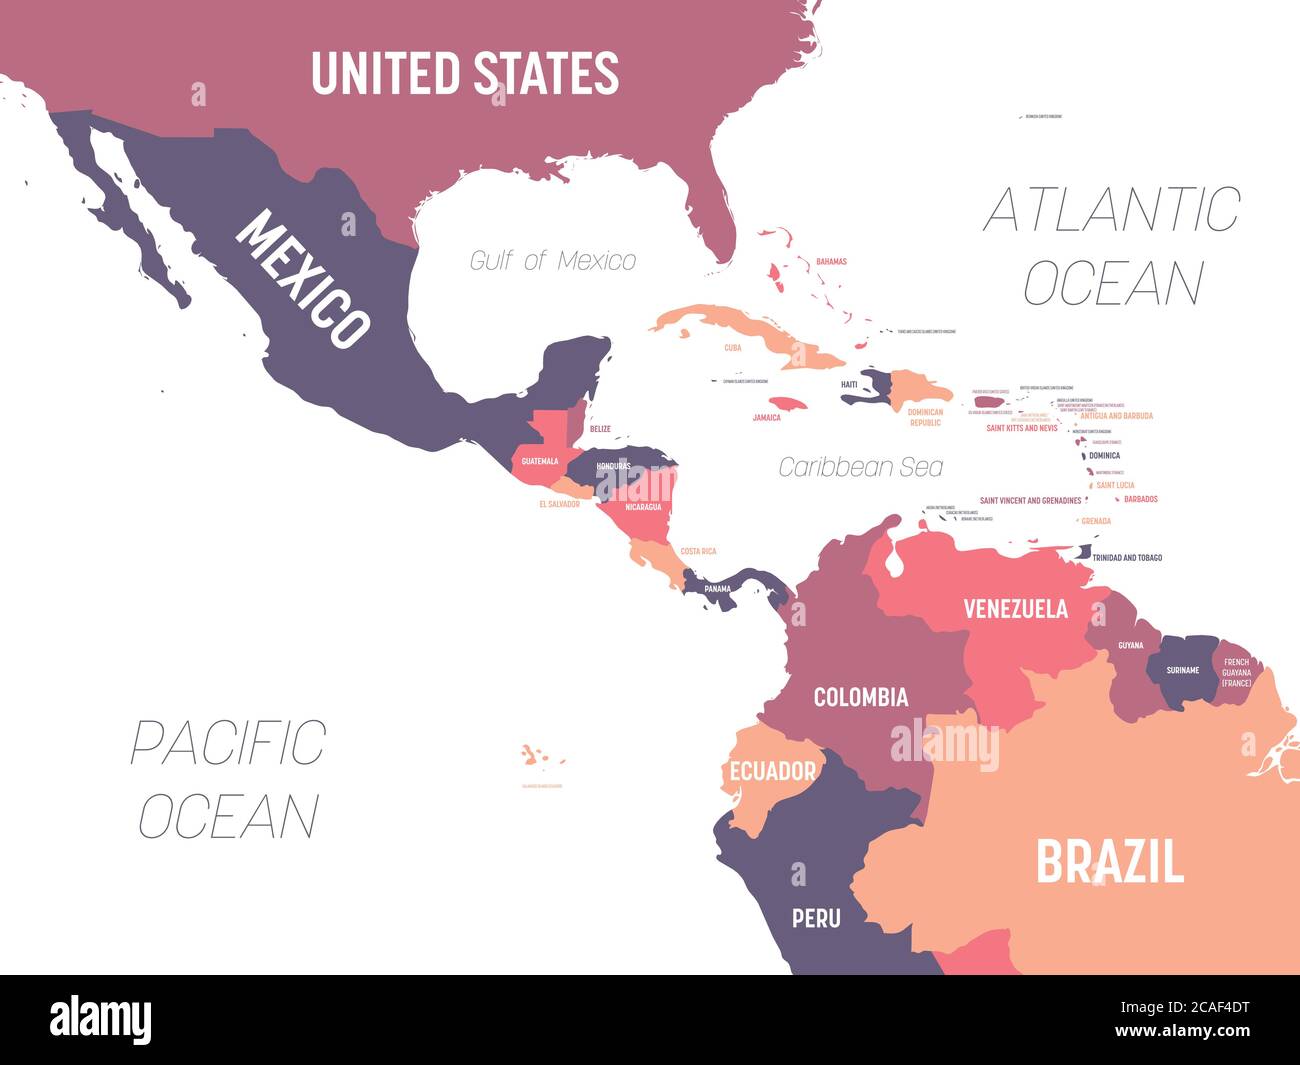 Mapa de América Central. Mapa político de alta detalle de la región de